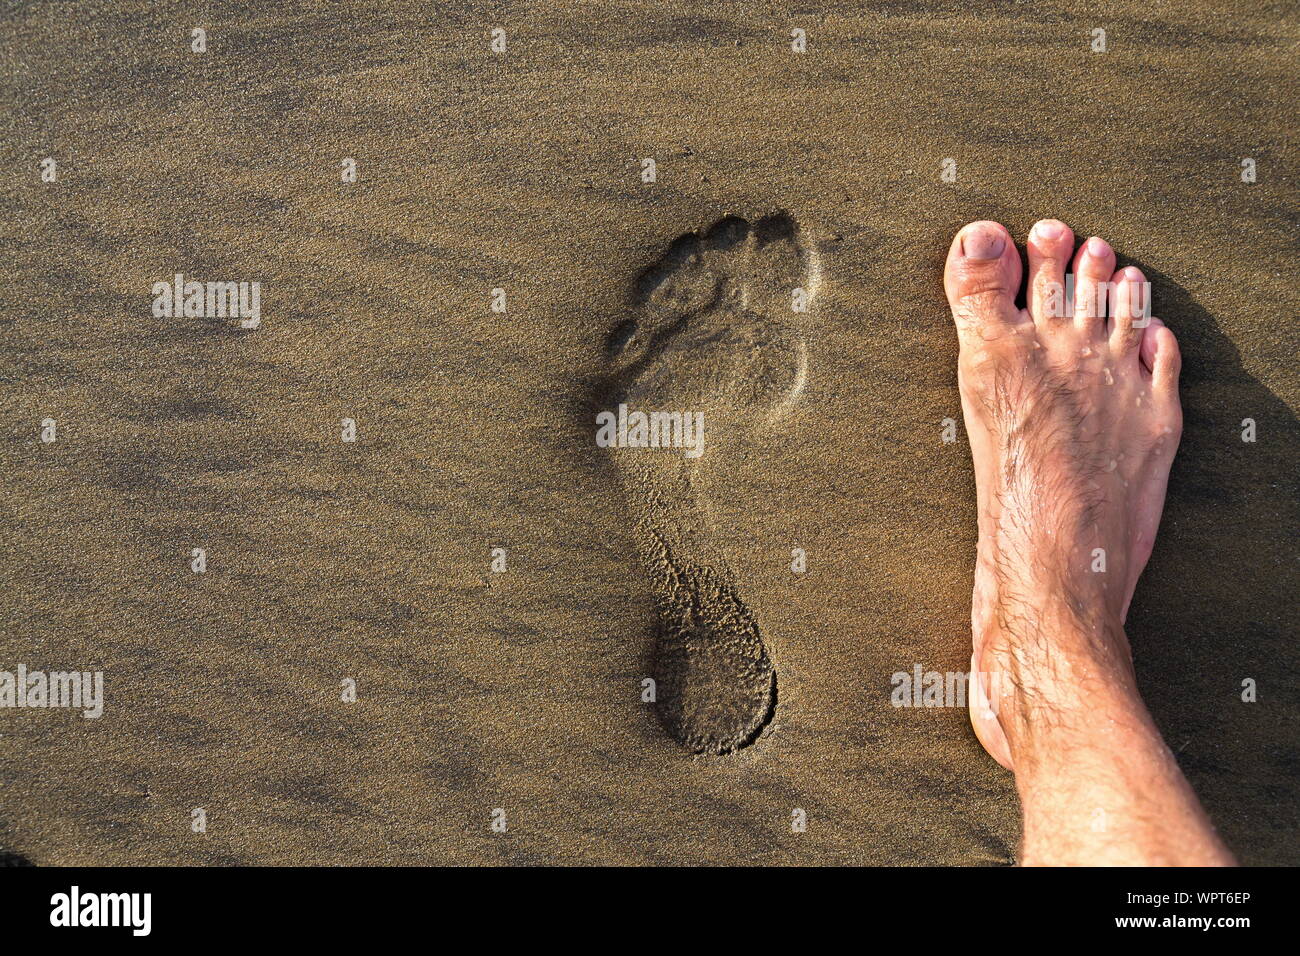 Fußabdruck mit barfuss Füße in Braun Gelb Sand strand Hintergrund, Aktiv gesund leben und persönliches Wachstum Konzept, kopieren Raum Stockfoto